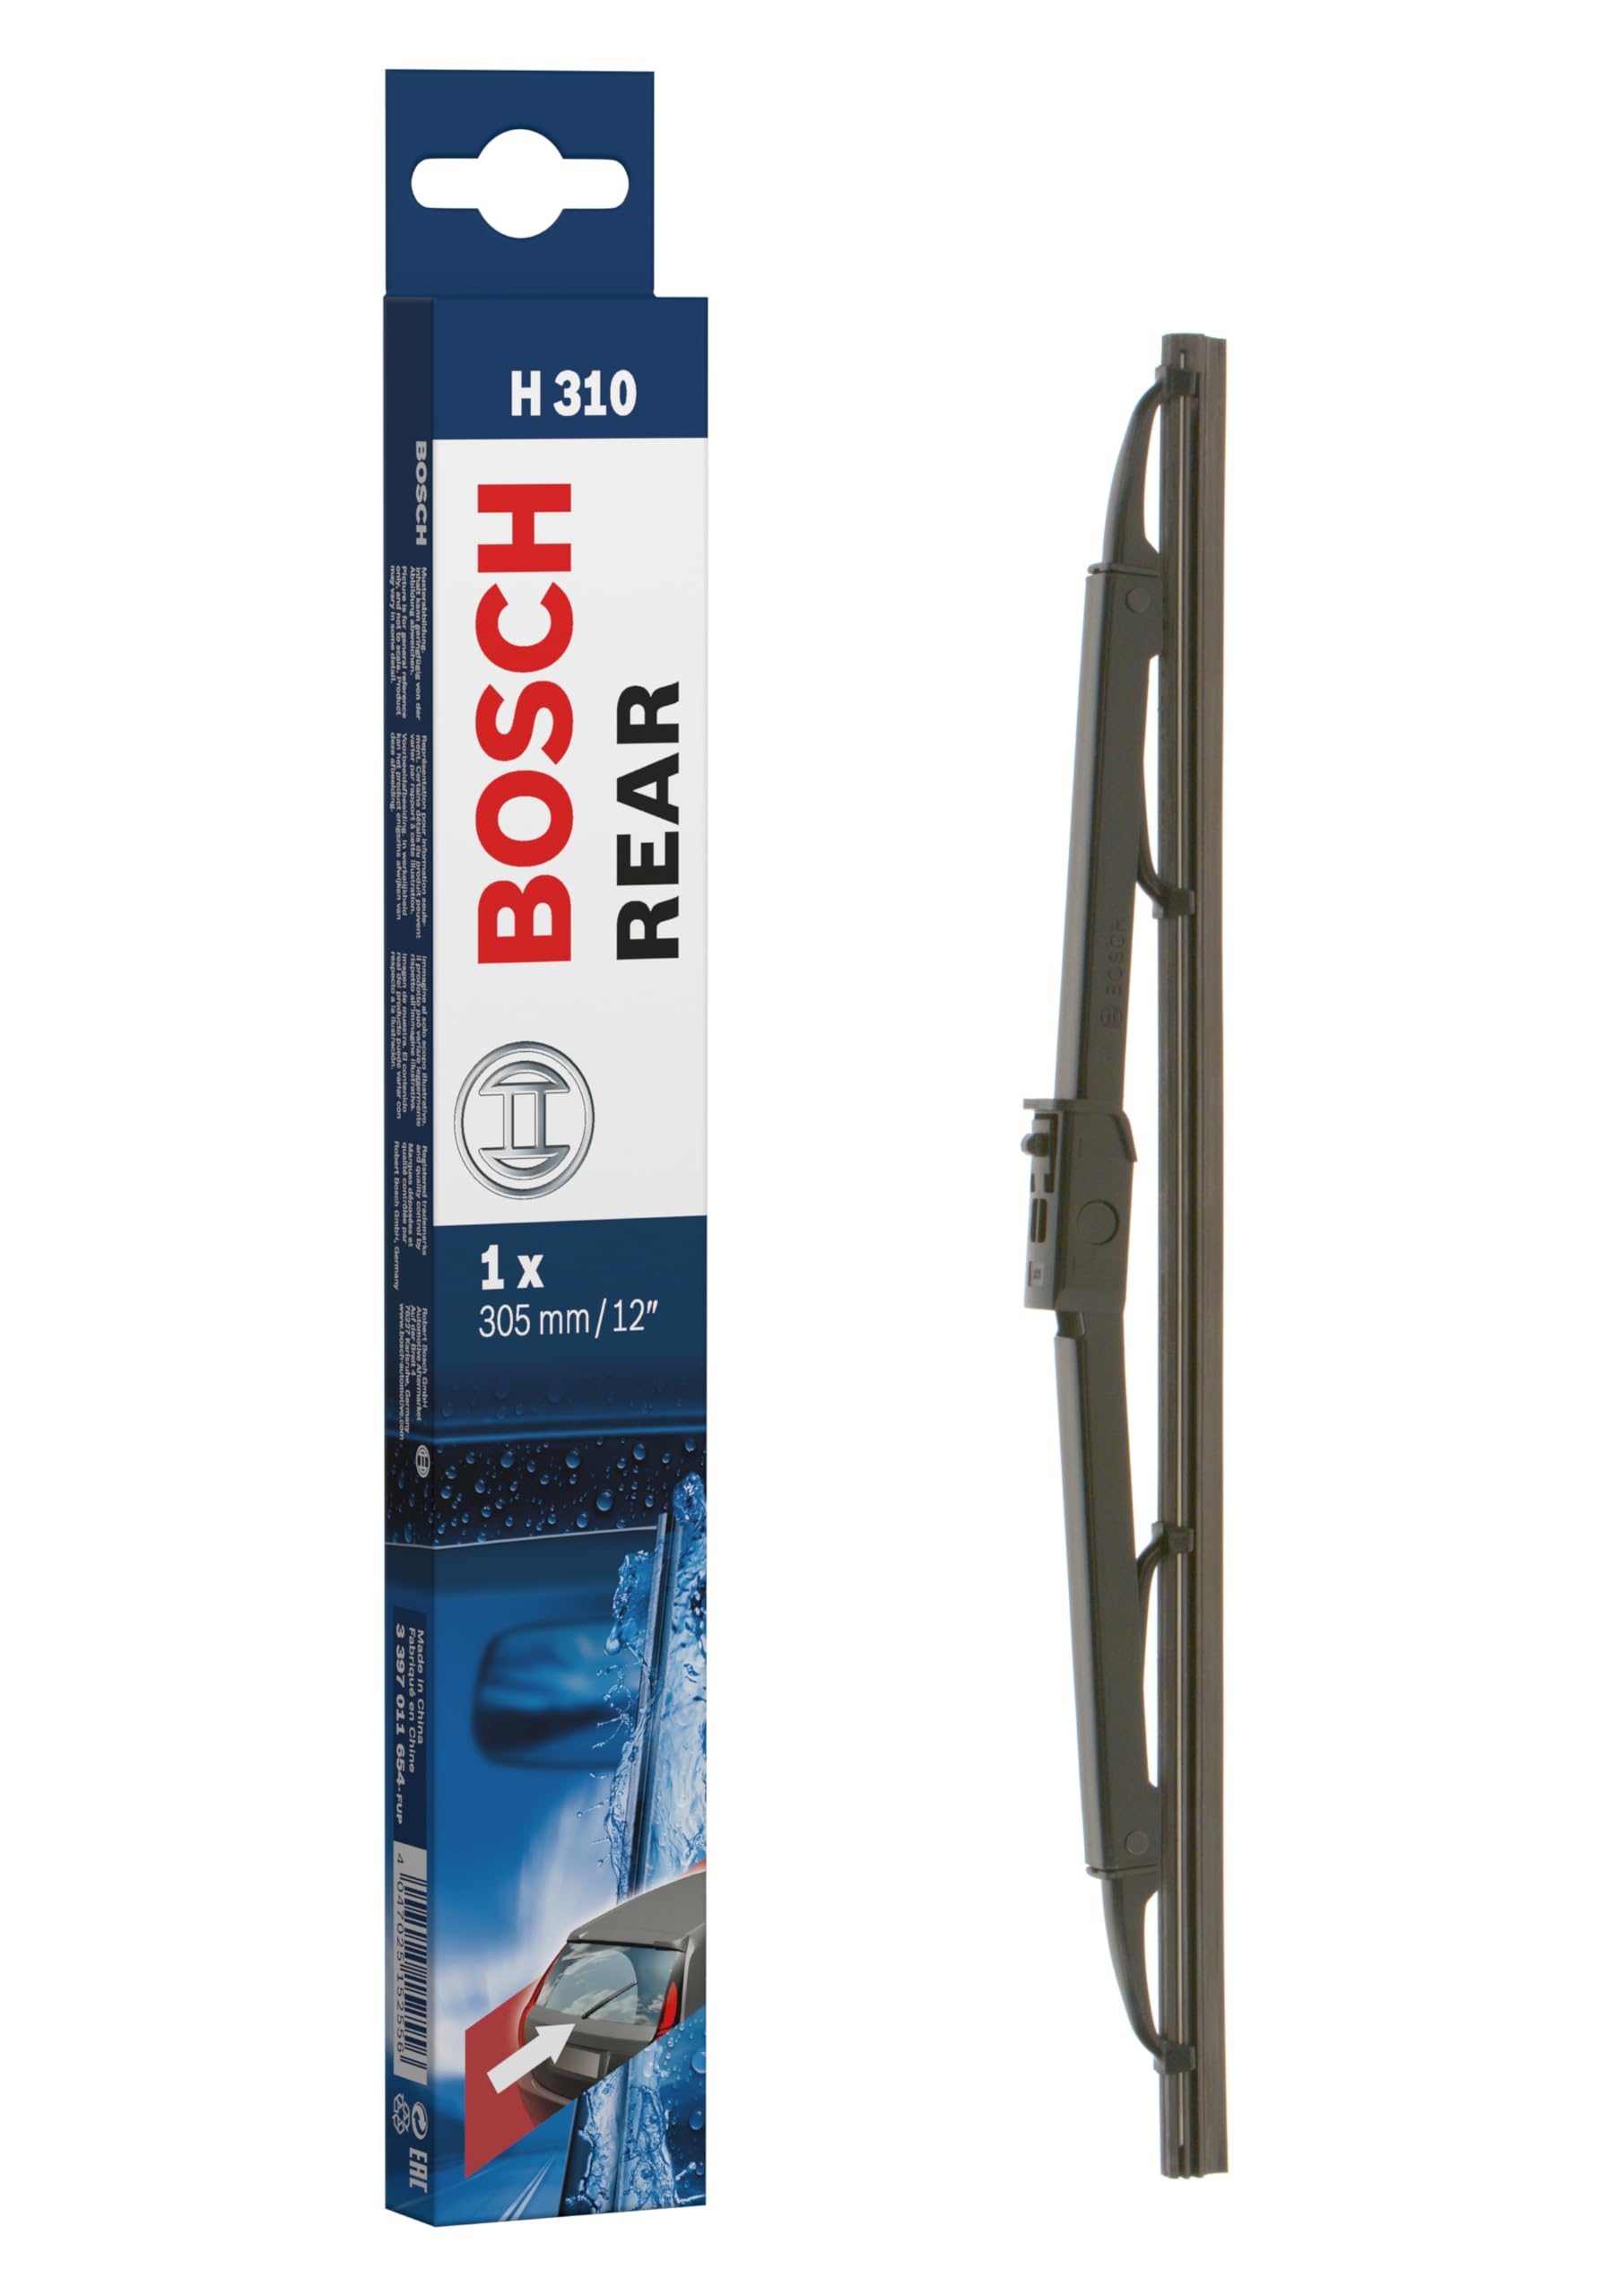 Bosch Scheibenwischer Rear H310, Länge: 300mm – Scheibenwischer für Heckscheibe von Bosch Automotive